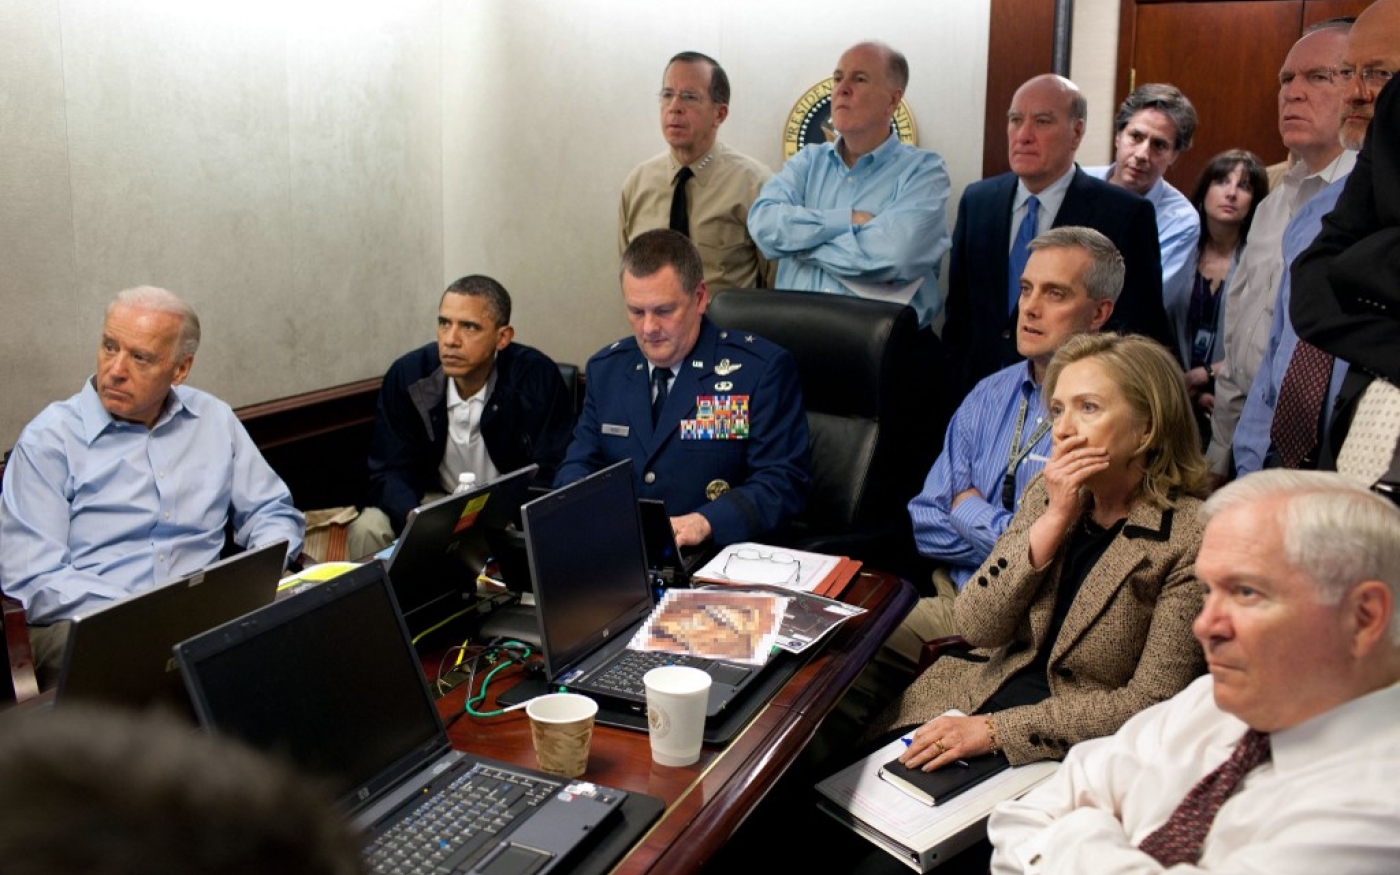 Célèbre photo de la pièce ultra-sécurisée de la Maison-Blanche où Barack Obama a suivi en direct l’assaut contre Ben Laden en 2011. Joe Biden, alors vice-président, est assis à sa droite (AFP)